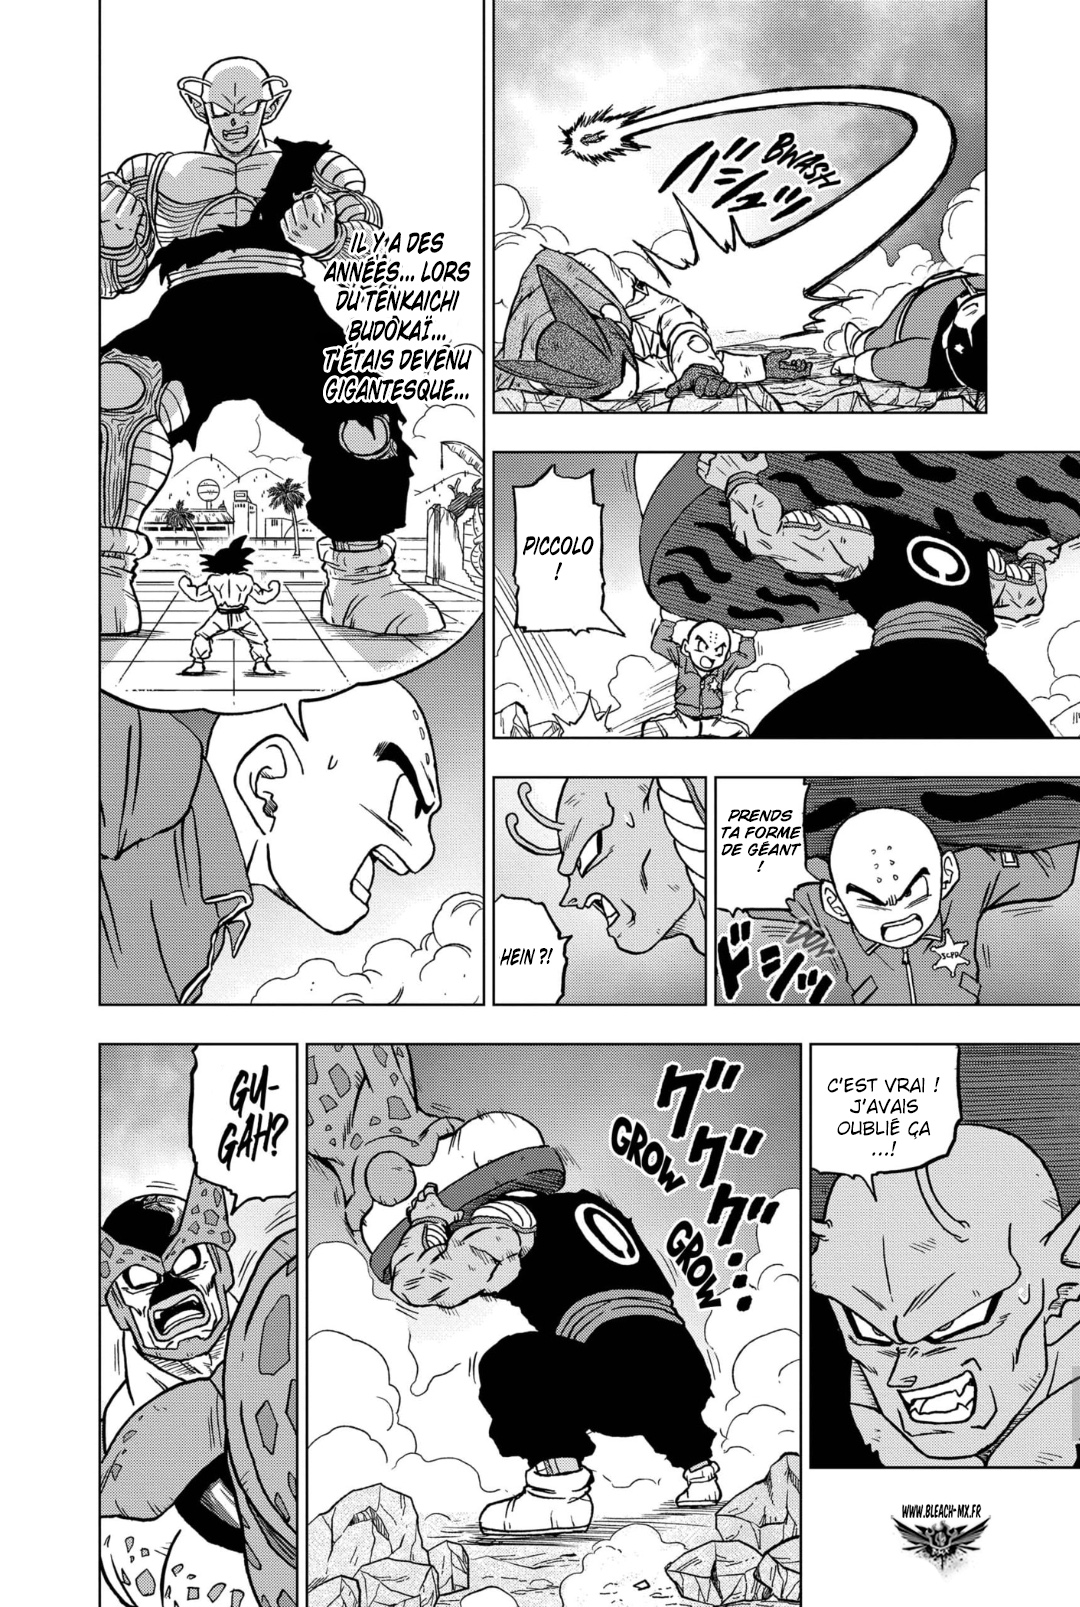 B-Manga : Lecture en ligne - Dragon Ball Super - Chapitre 098 - Page 2